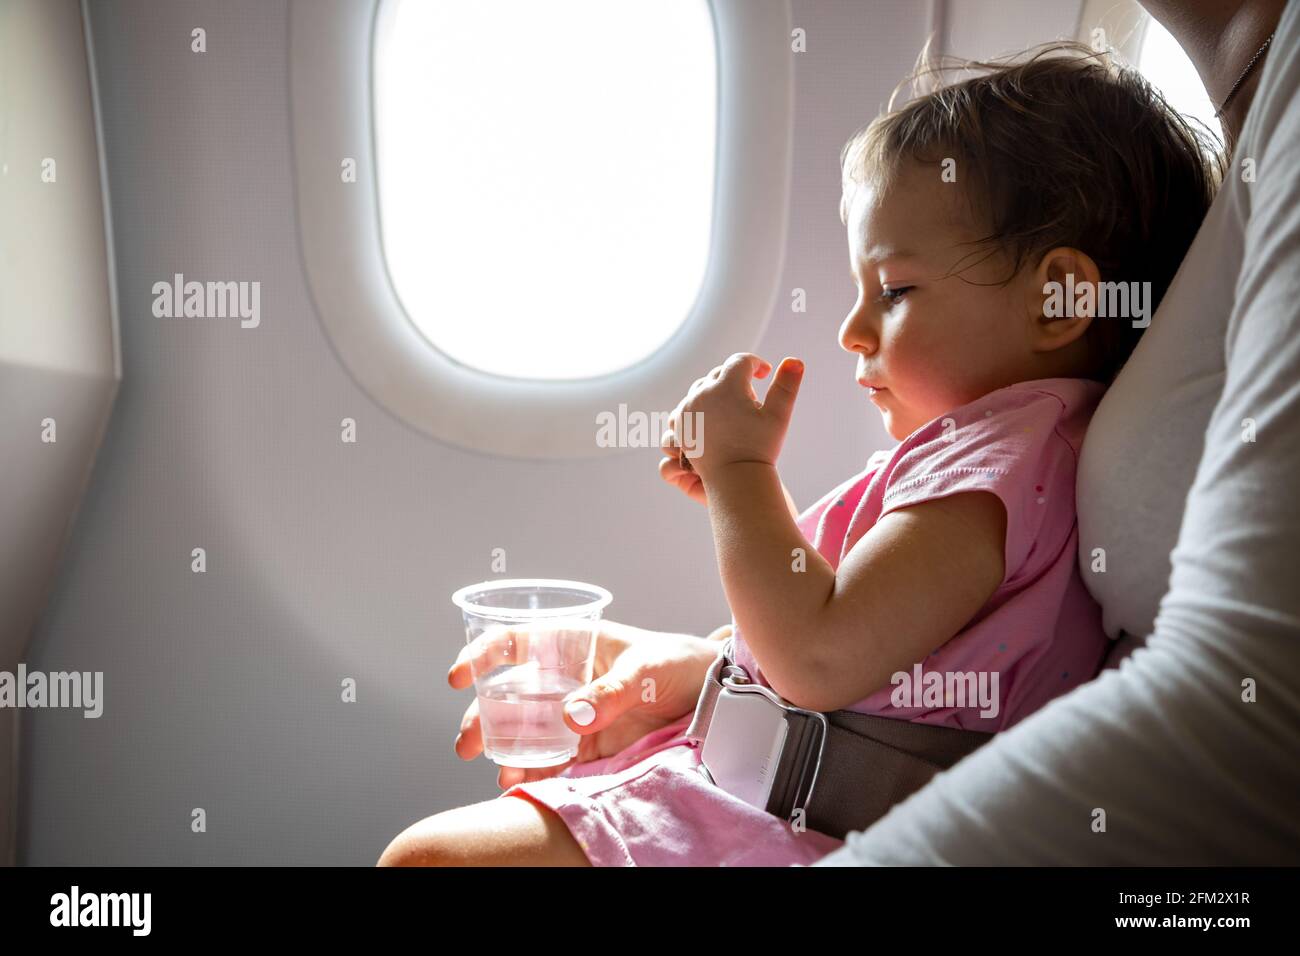 Flug mit Kleinkind. Kleinkind sitzt auf dem Schoß der Mutter, der mit einem speziellen Gürtel im Flugzeug vor dem Bullauge befestigt ist Stockfoto